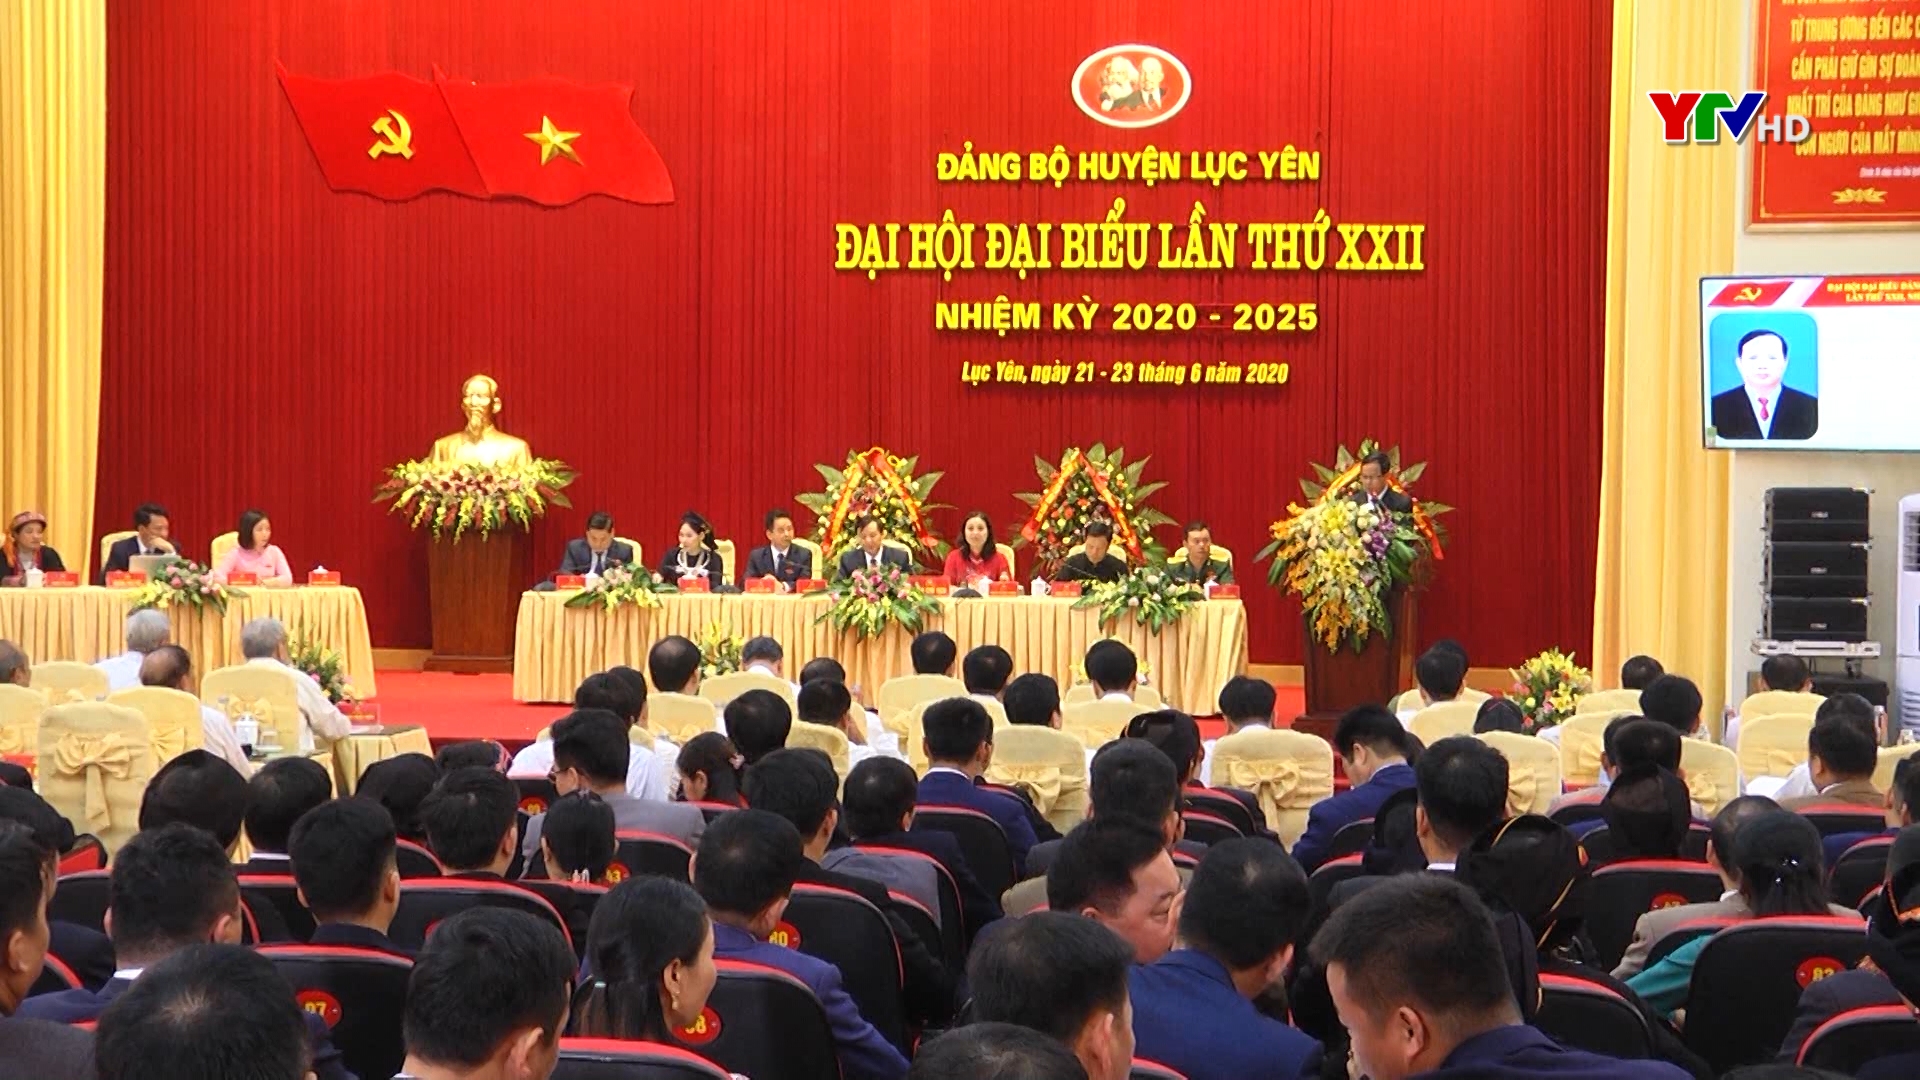 Khai mạc Đại hội đại biểu Đảng bộ huyện Lục Yên lần thứ XXII, nhiệm kỳ 2020 - 2025